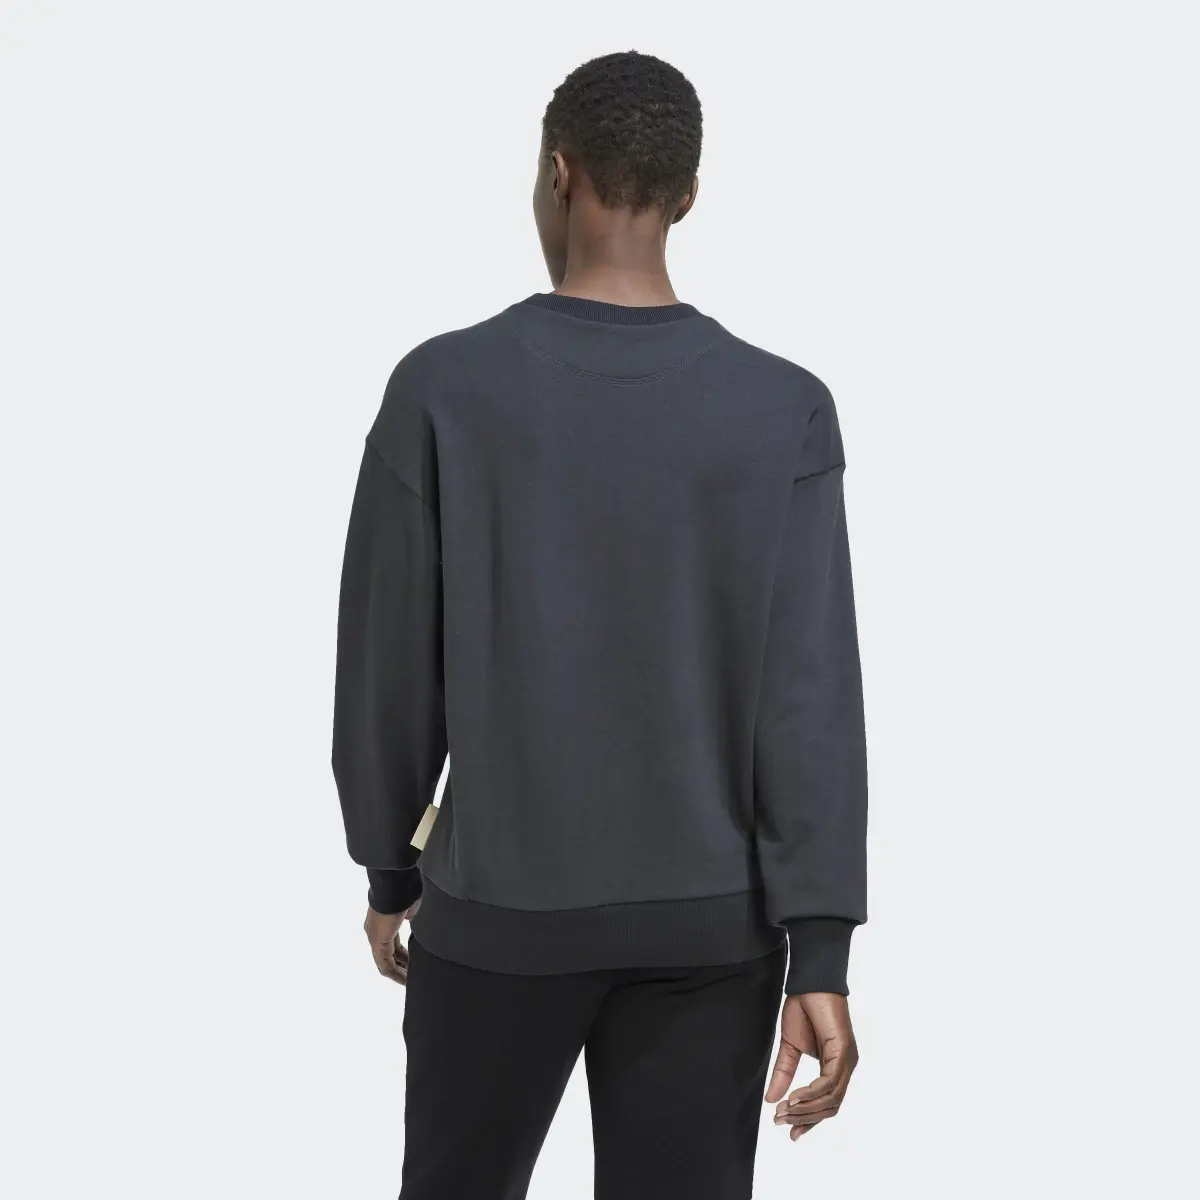 Adidas Studio Lounge Loose Sweatshirt. 3